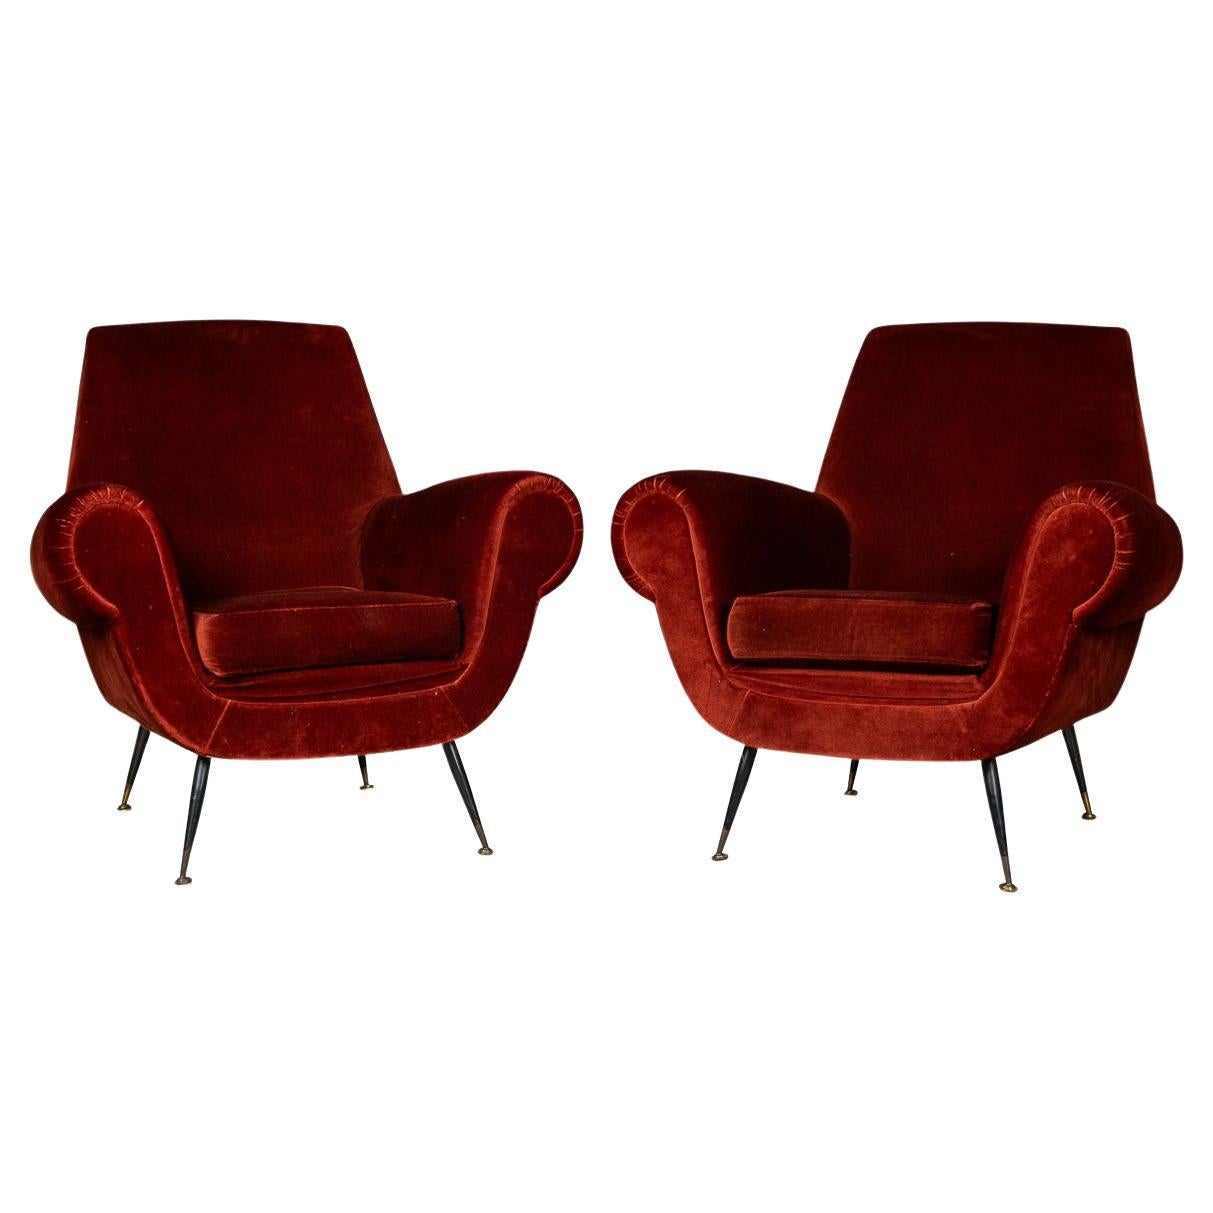 Italienisches Sesselpaar des 20. Jahrhunderts von Gigi Radice für Minotti, ca. 1960